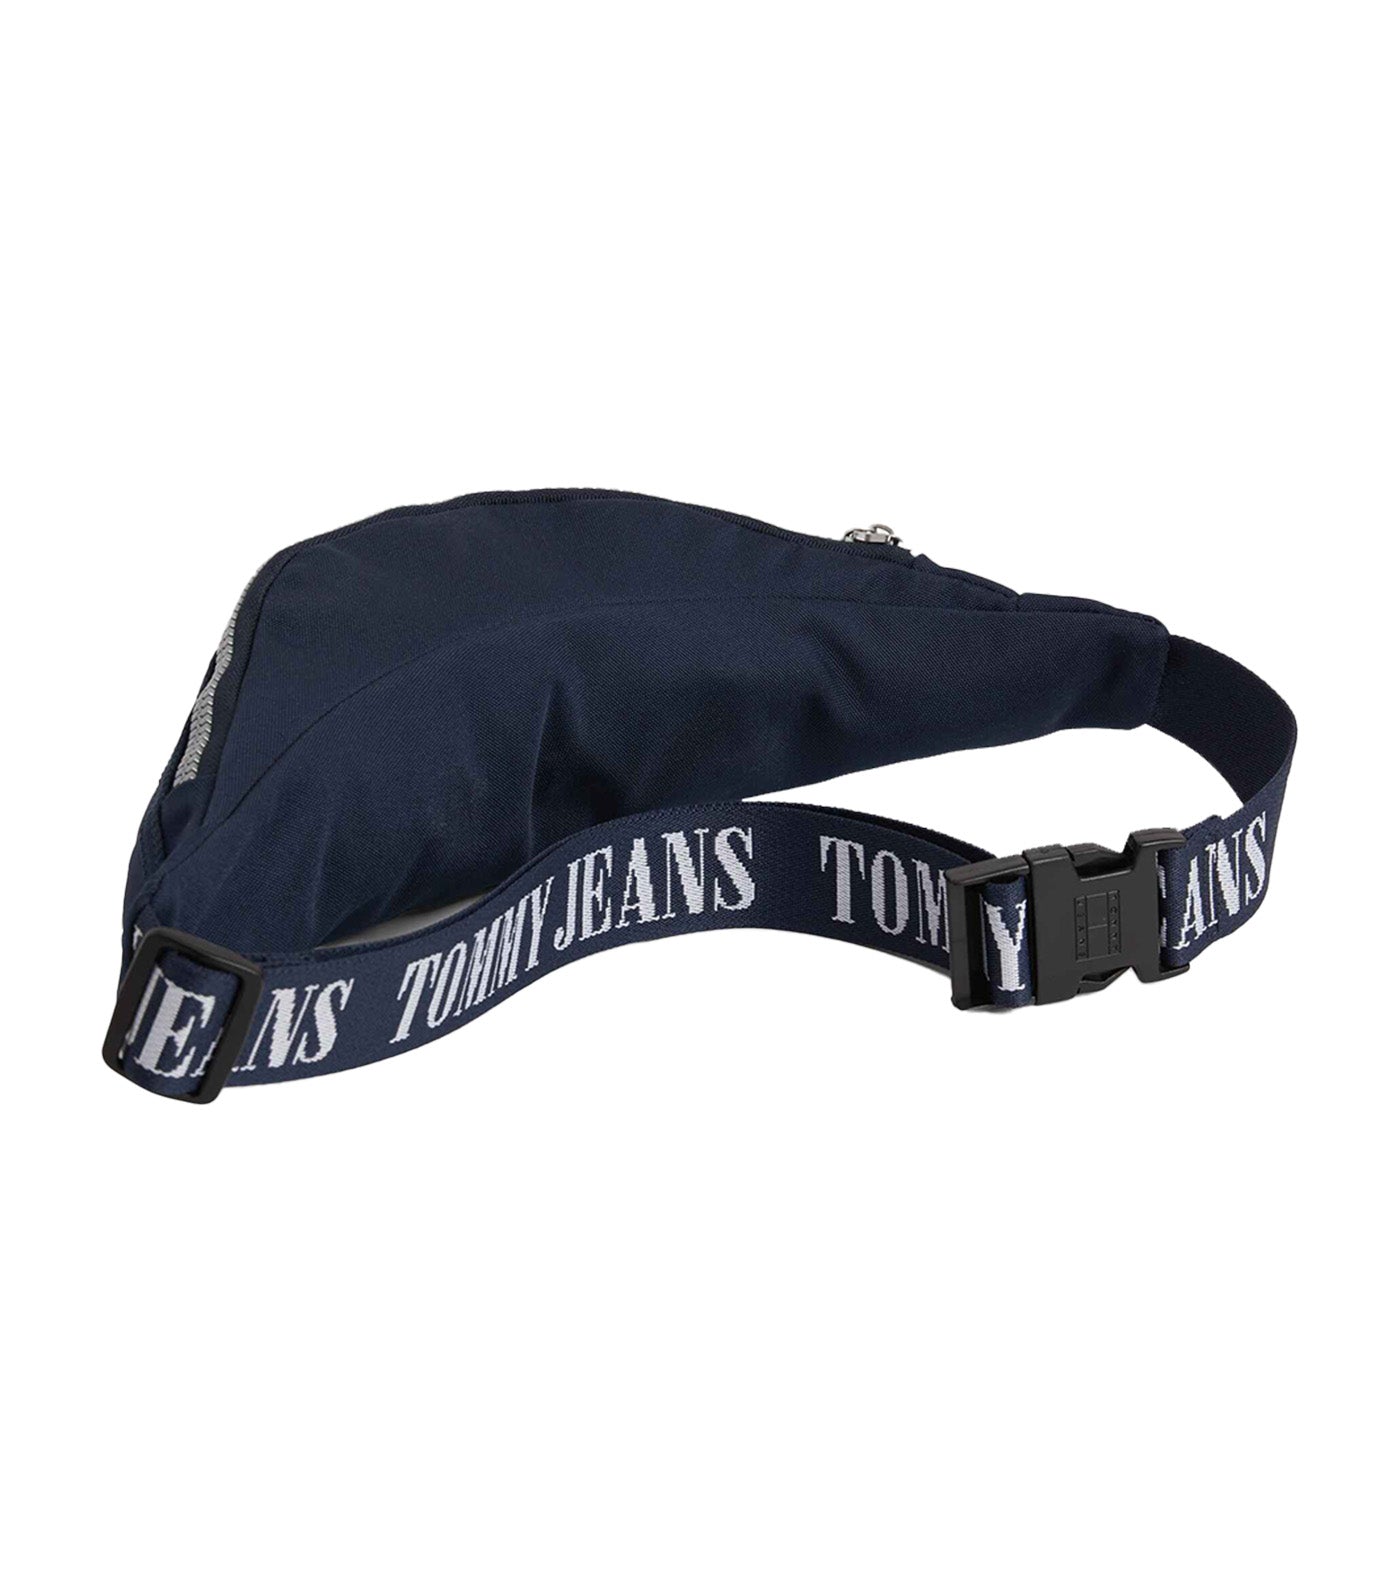 Men's Heritage Bum Bag Twilight Navy